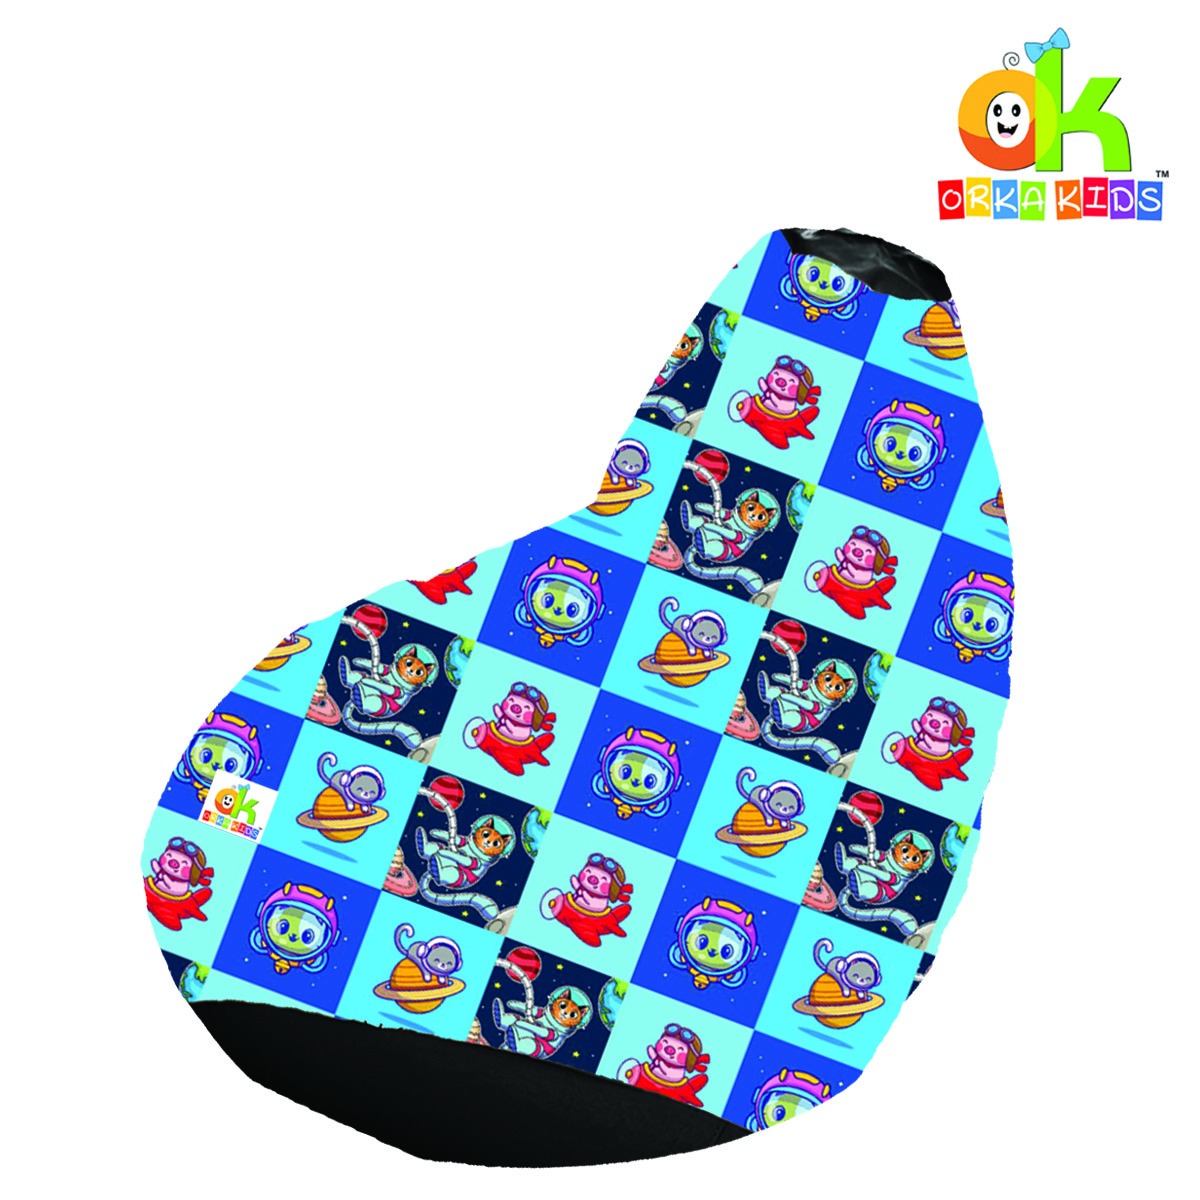 ORKA Kids Digital Printing33 Space Cartoon Bean Bag  